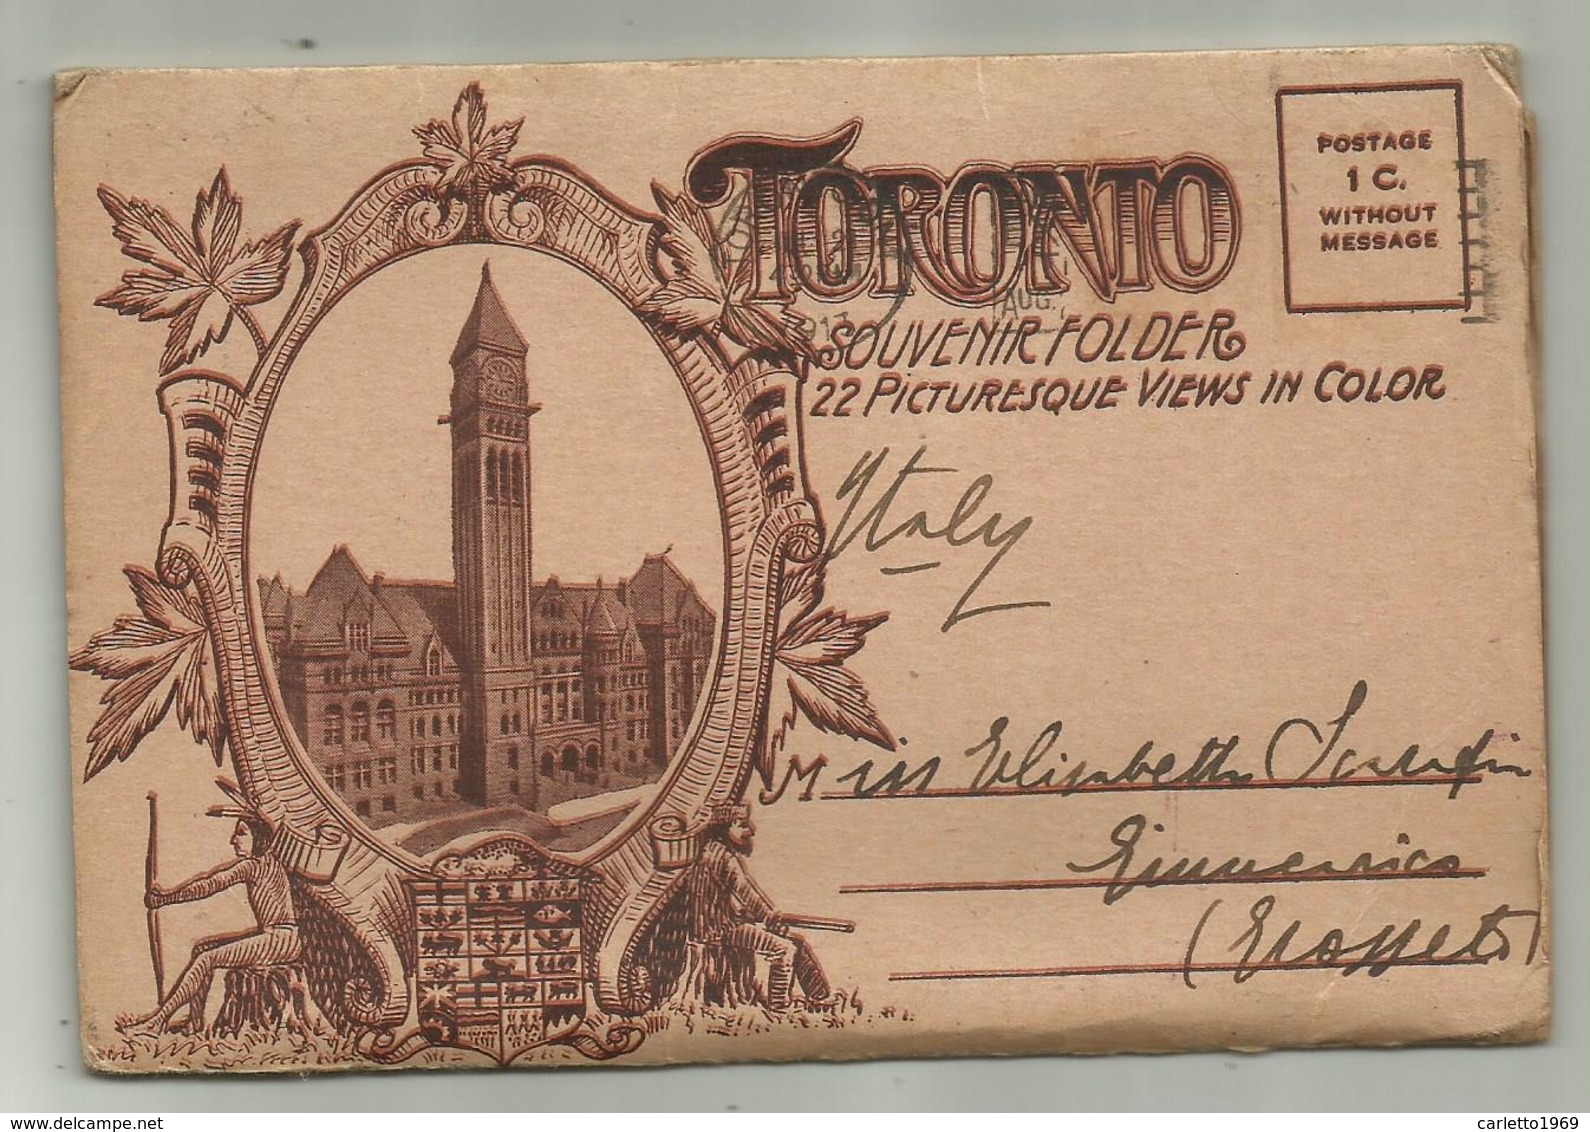 TORONTO SOUVENIR FOLDER 22 PICTURESQUE VIEWS IN COLOR 1913 FG - Toronto